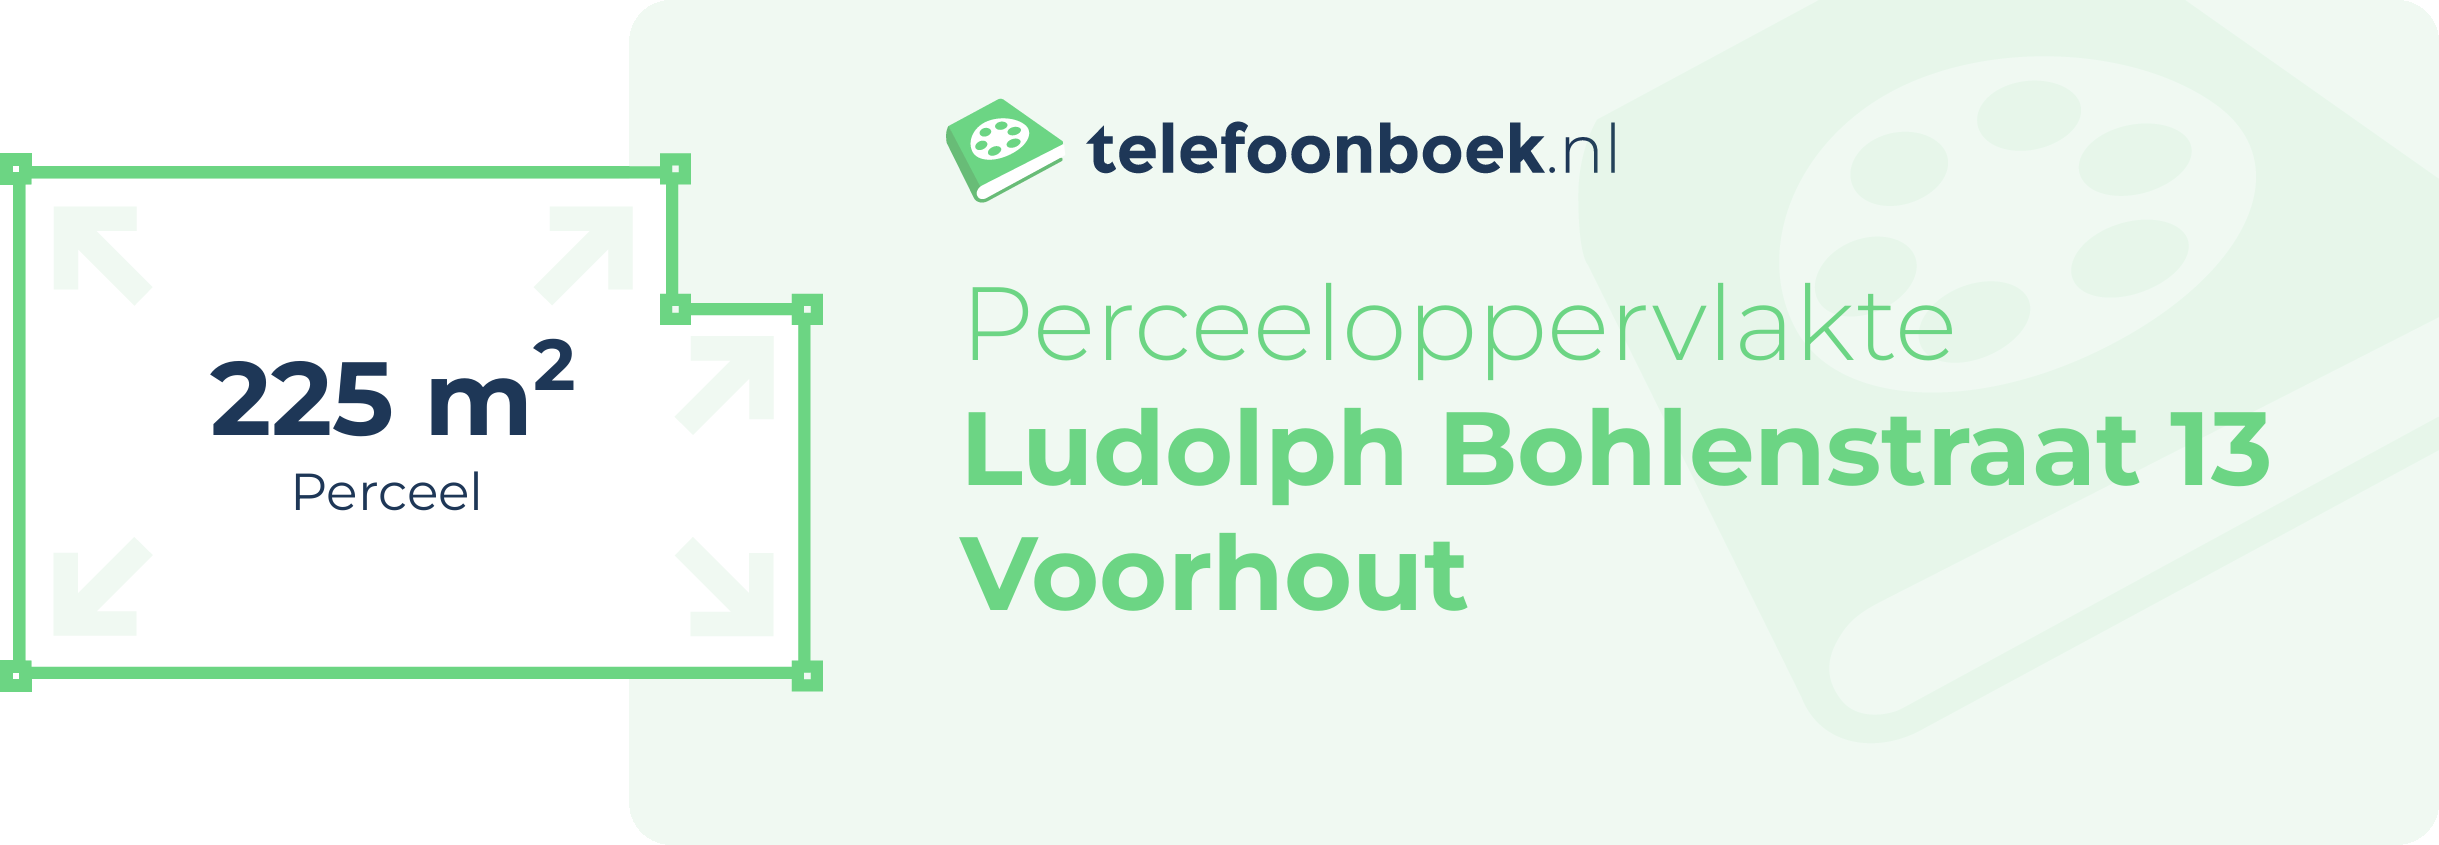 Perceeloppervlakte Ludolph Bohlenstraat 13 Voorhout